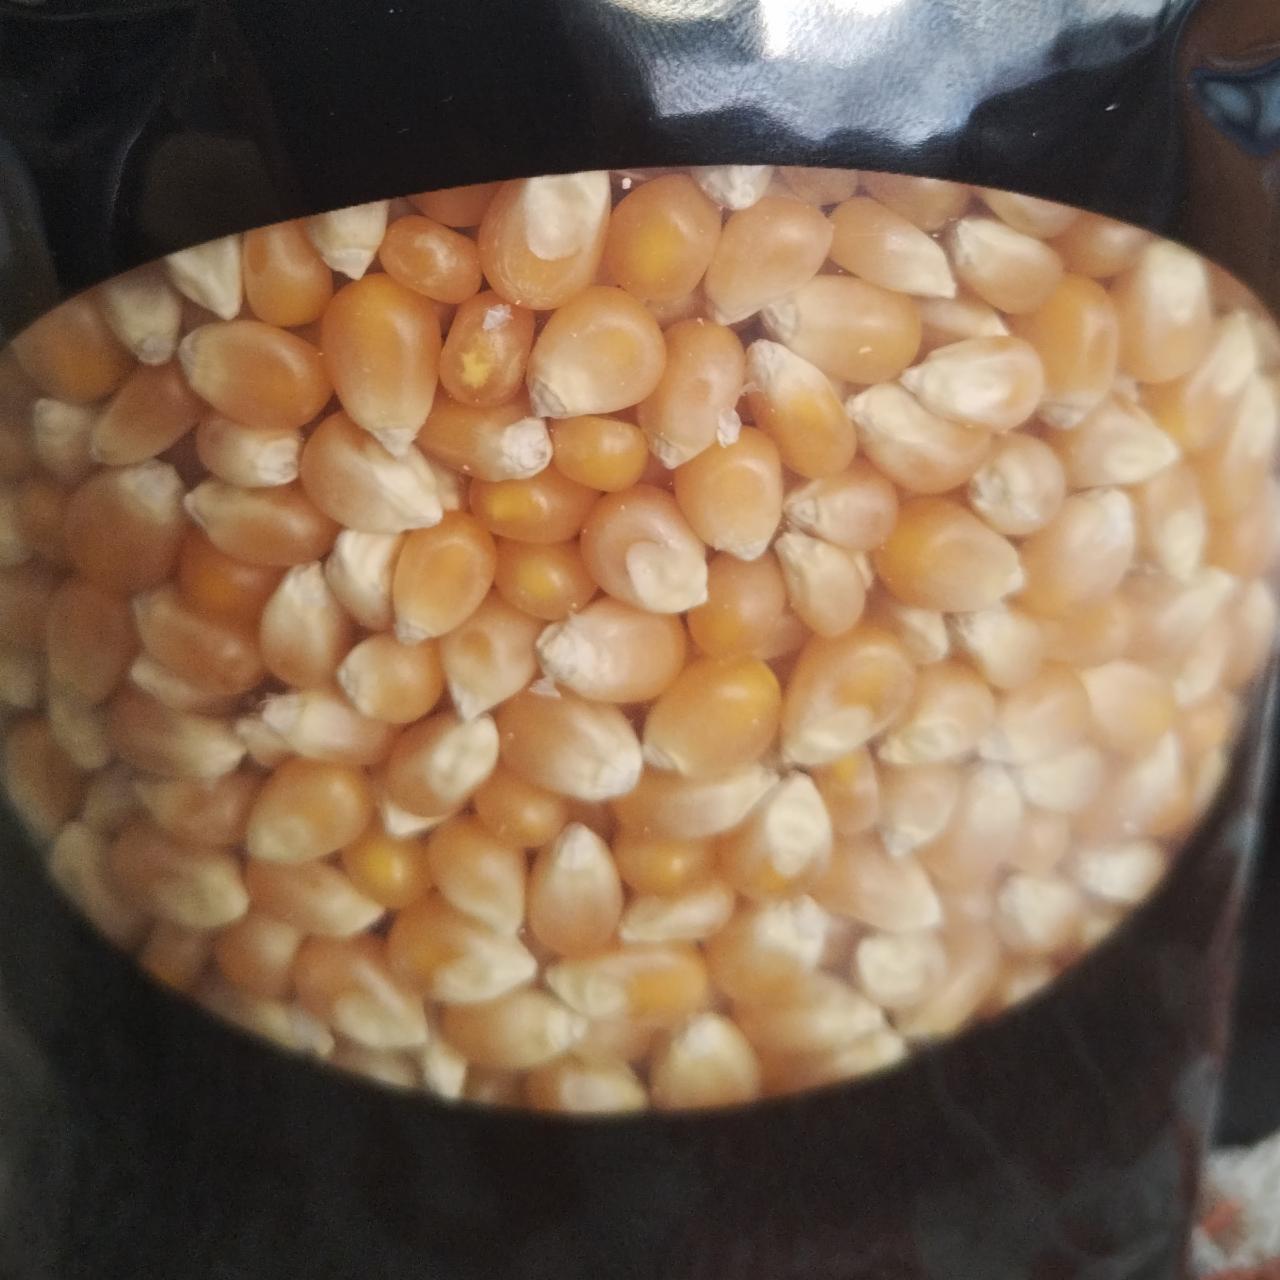 Fotografie - Premium butterfly kukuřice na slaný popcorn Popkornovač